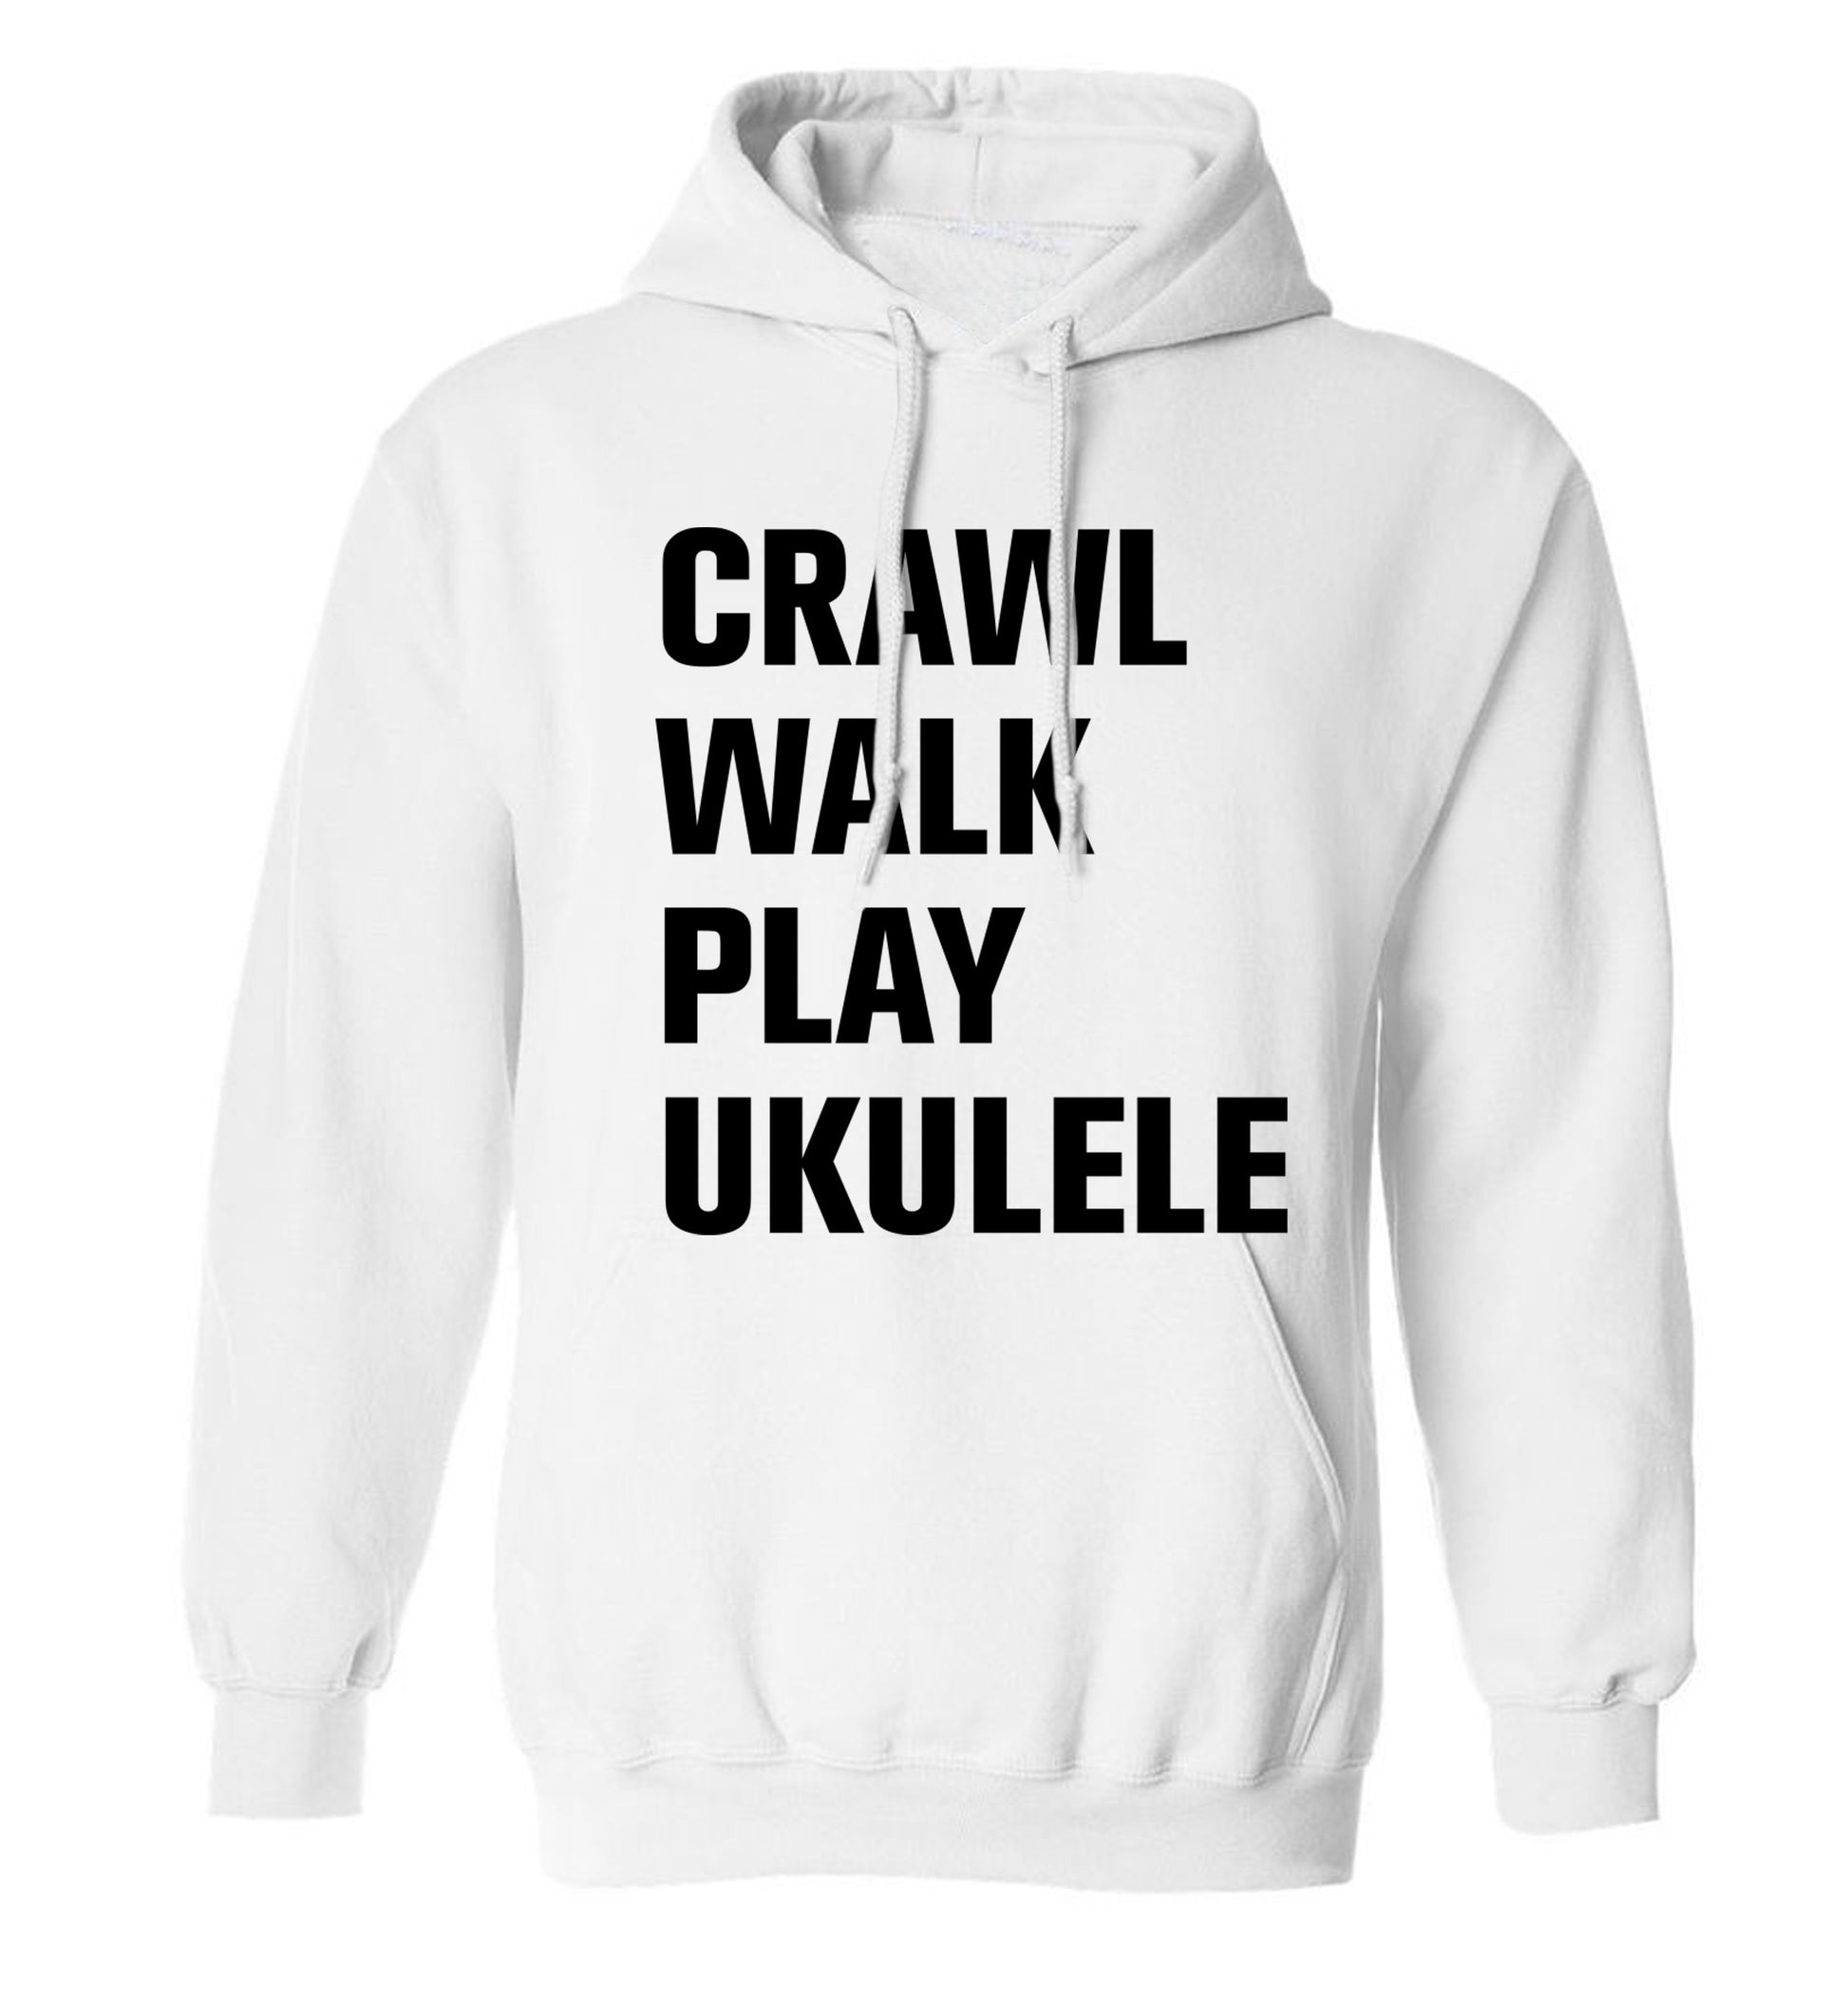 Crawl walk play ukulele adults unisex white hoodie 2XL